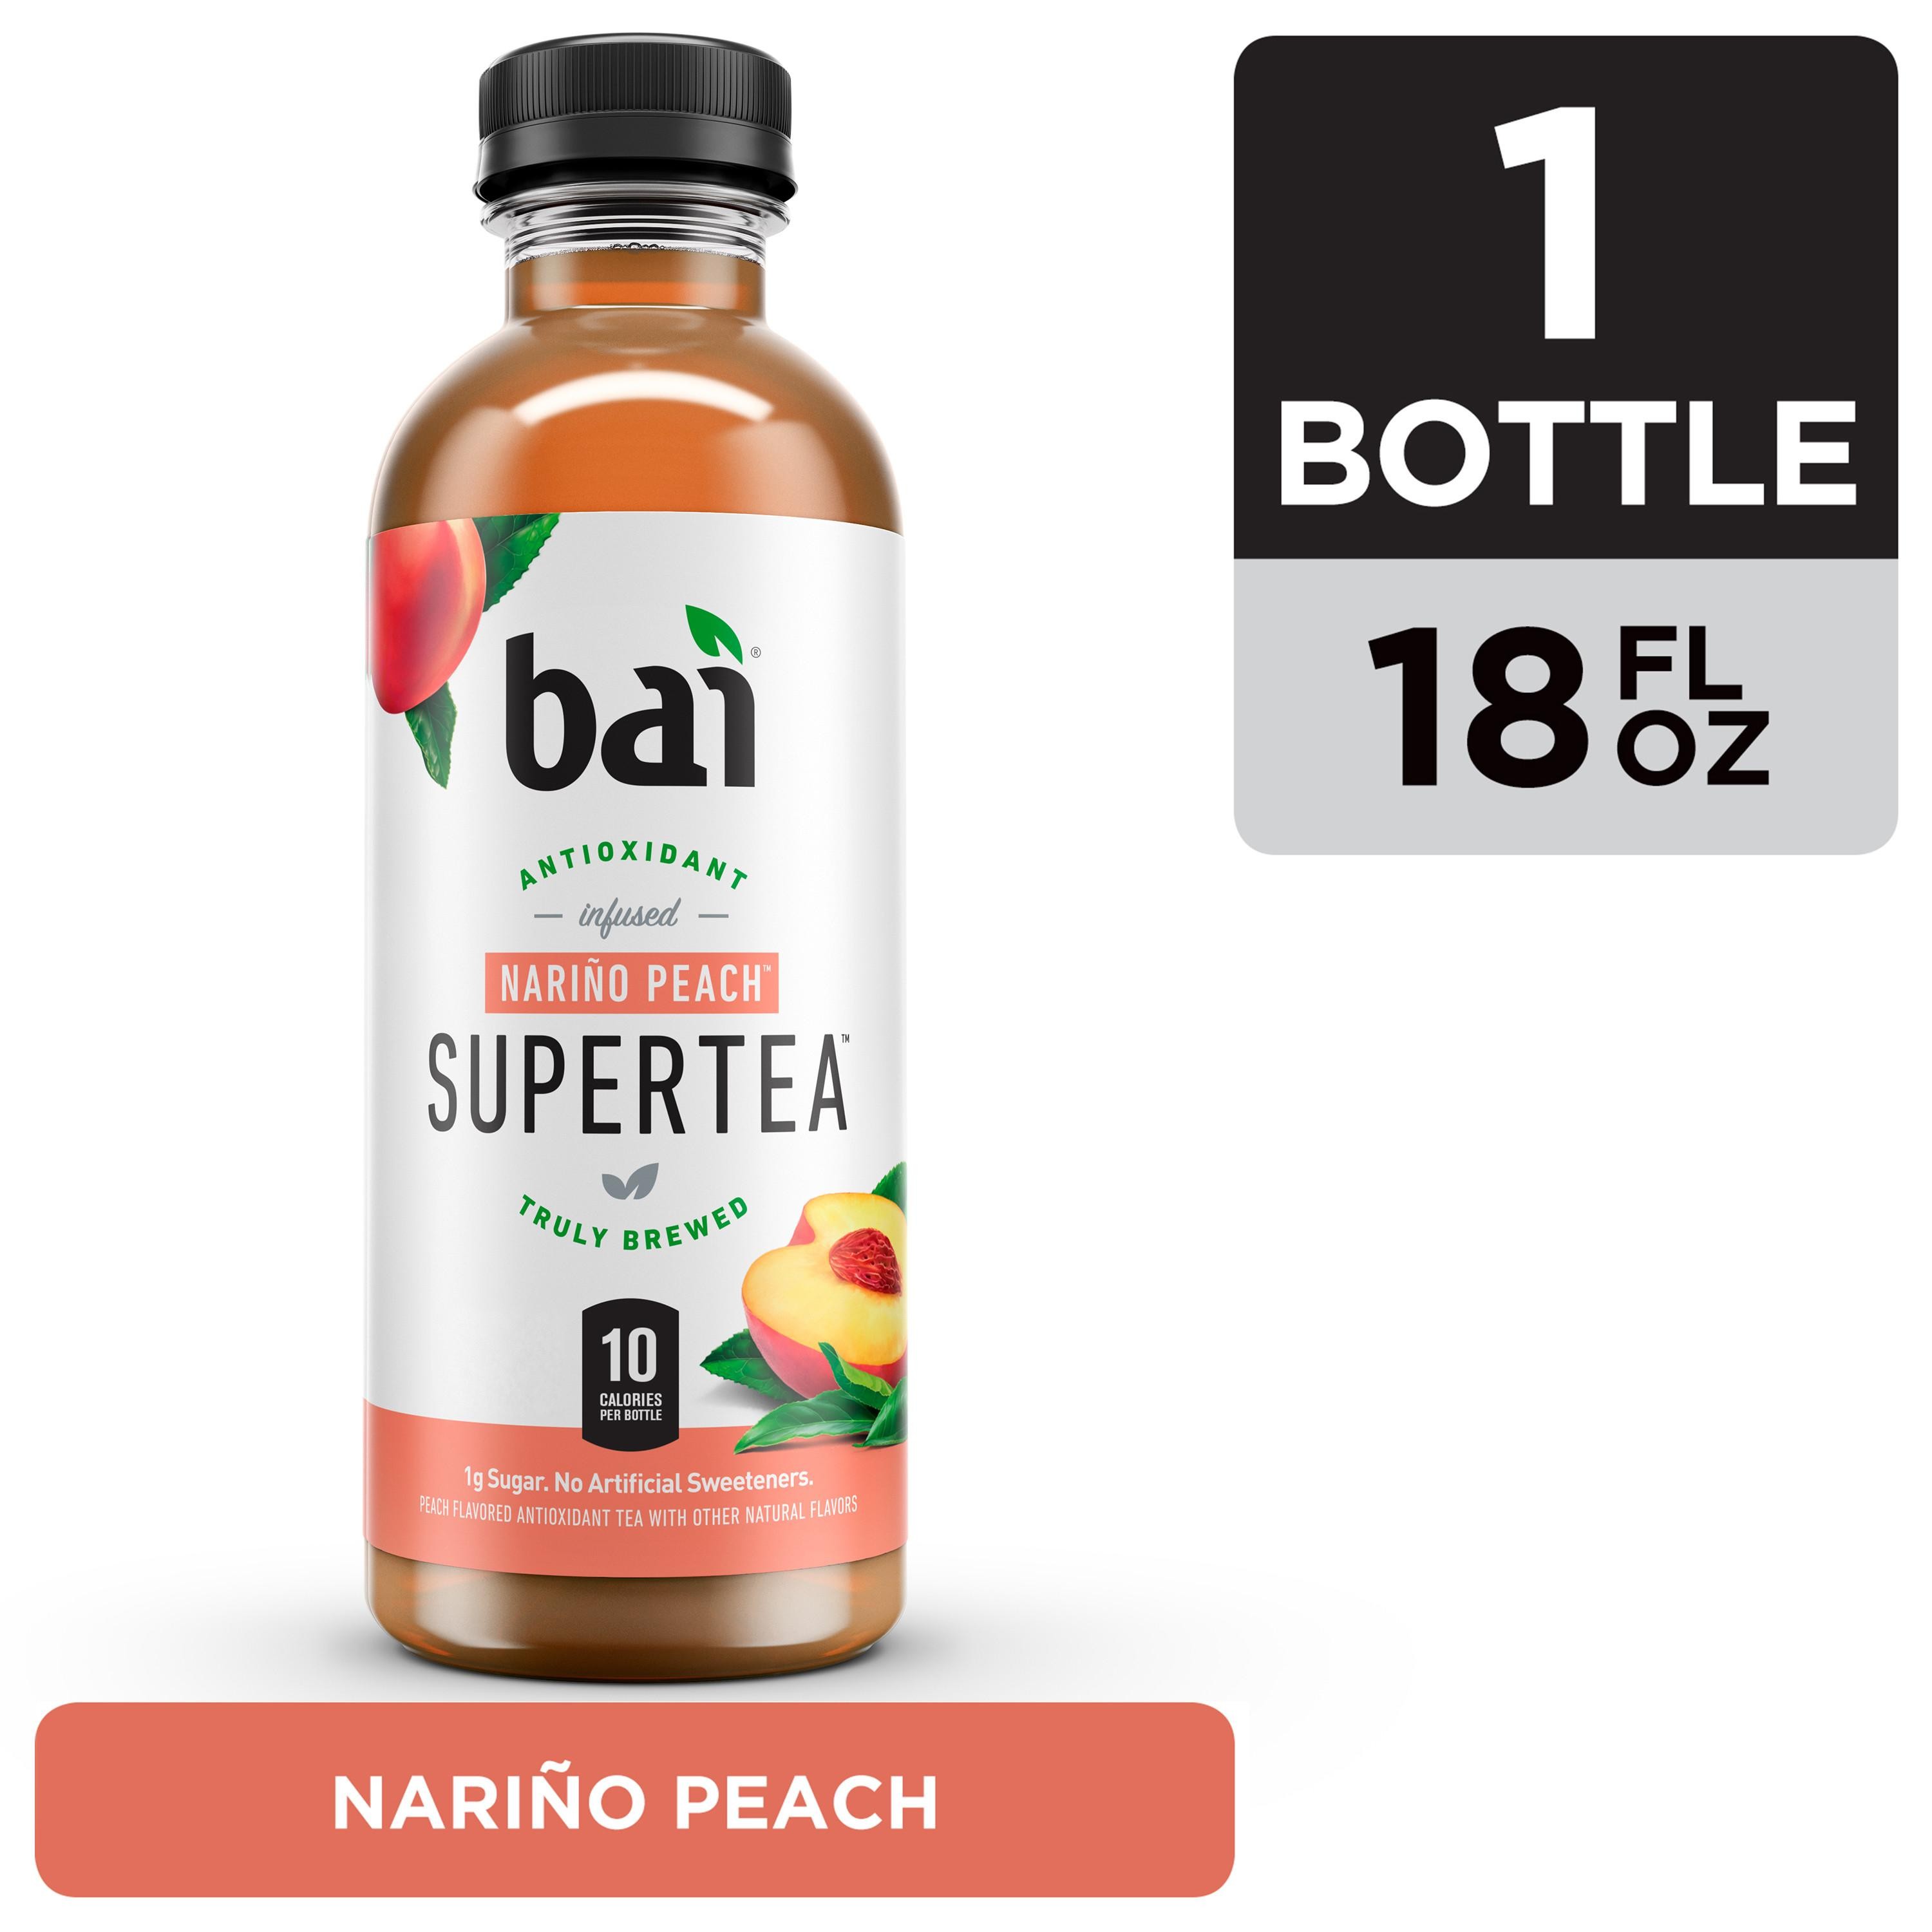 Bai Narino Peach Antioxidant Infused Supertea 18oz